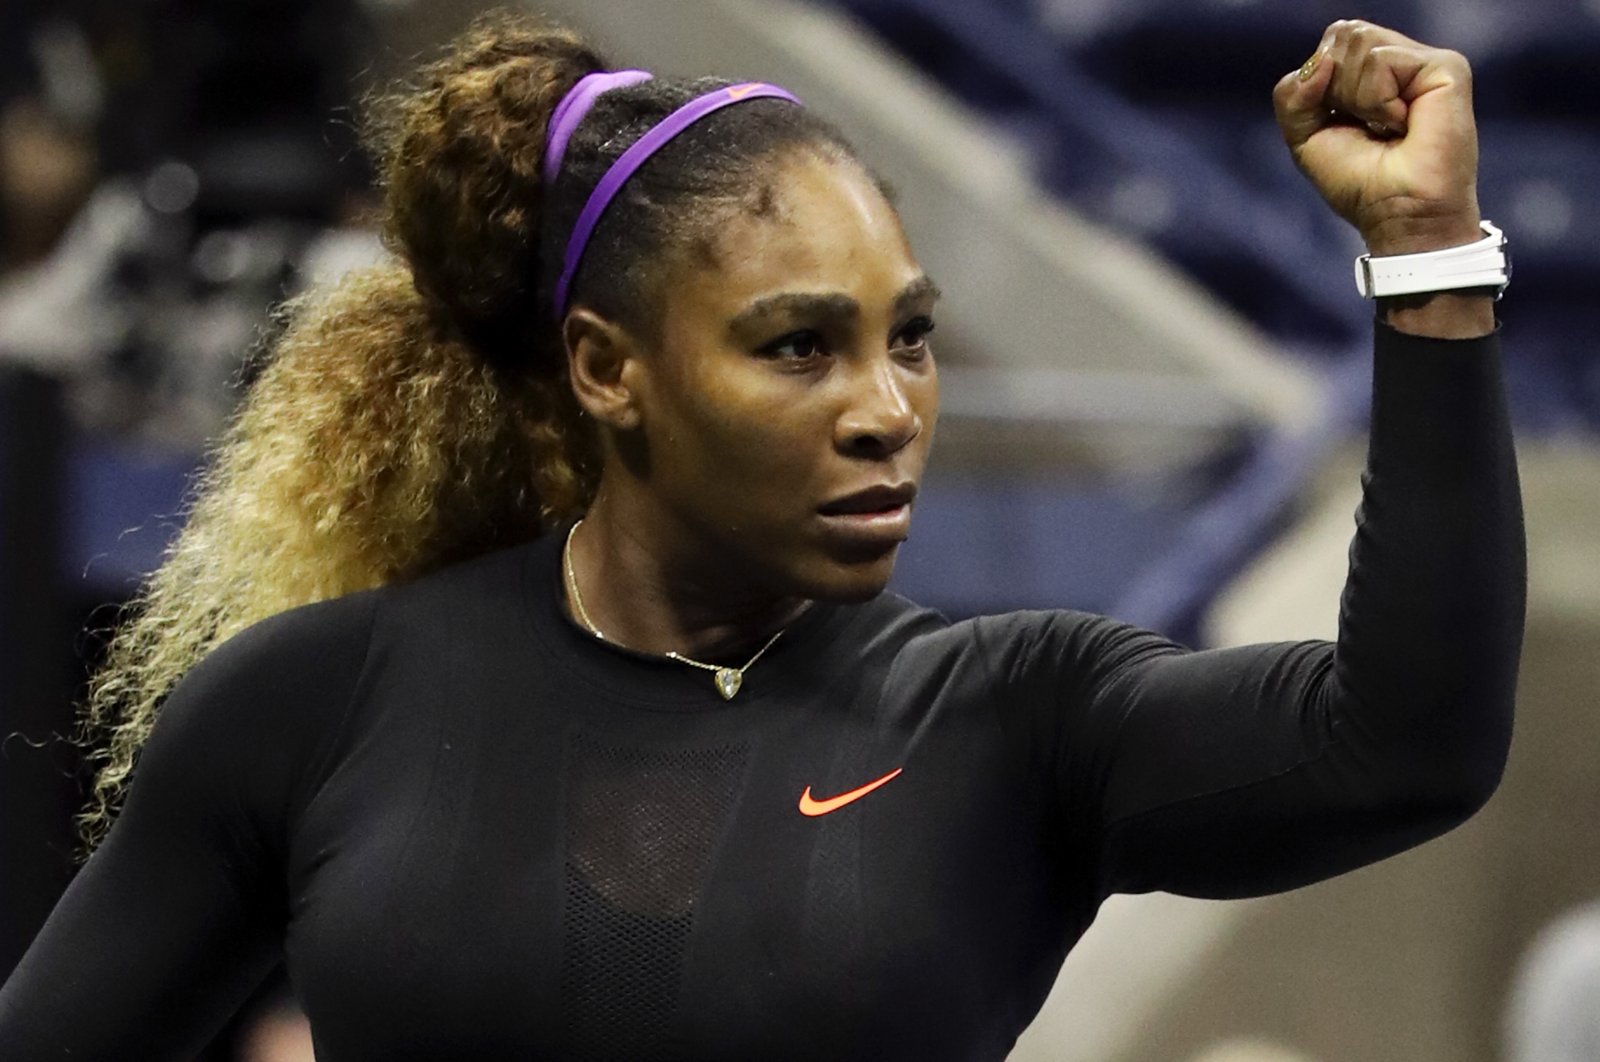 Kekosongan yang ditinggalkan oleh petenis hebat Serena akan terasa lama setelah pensiun